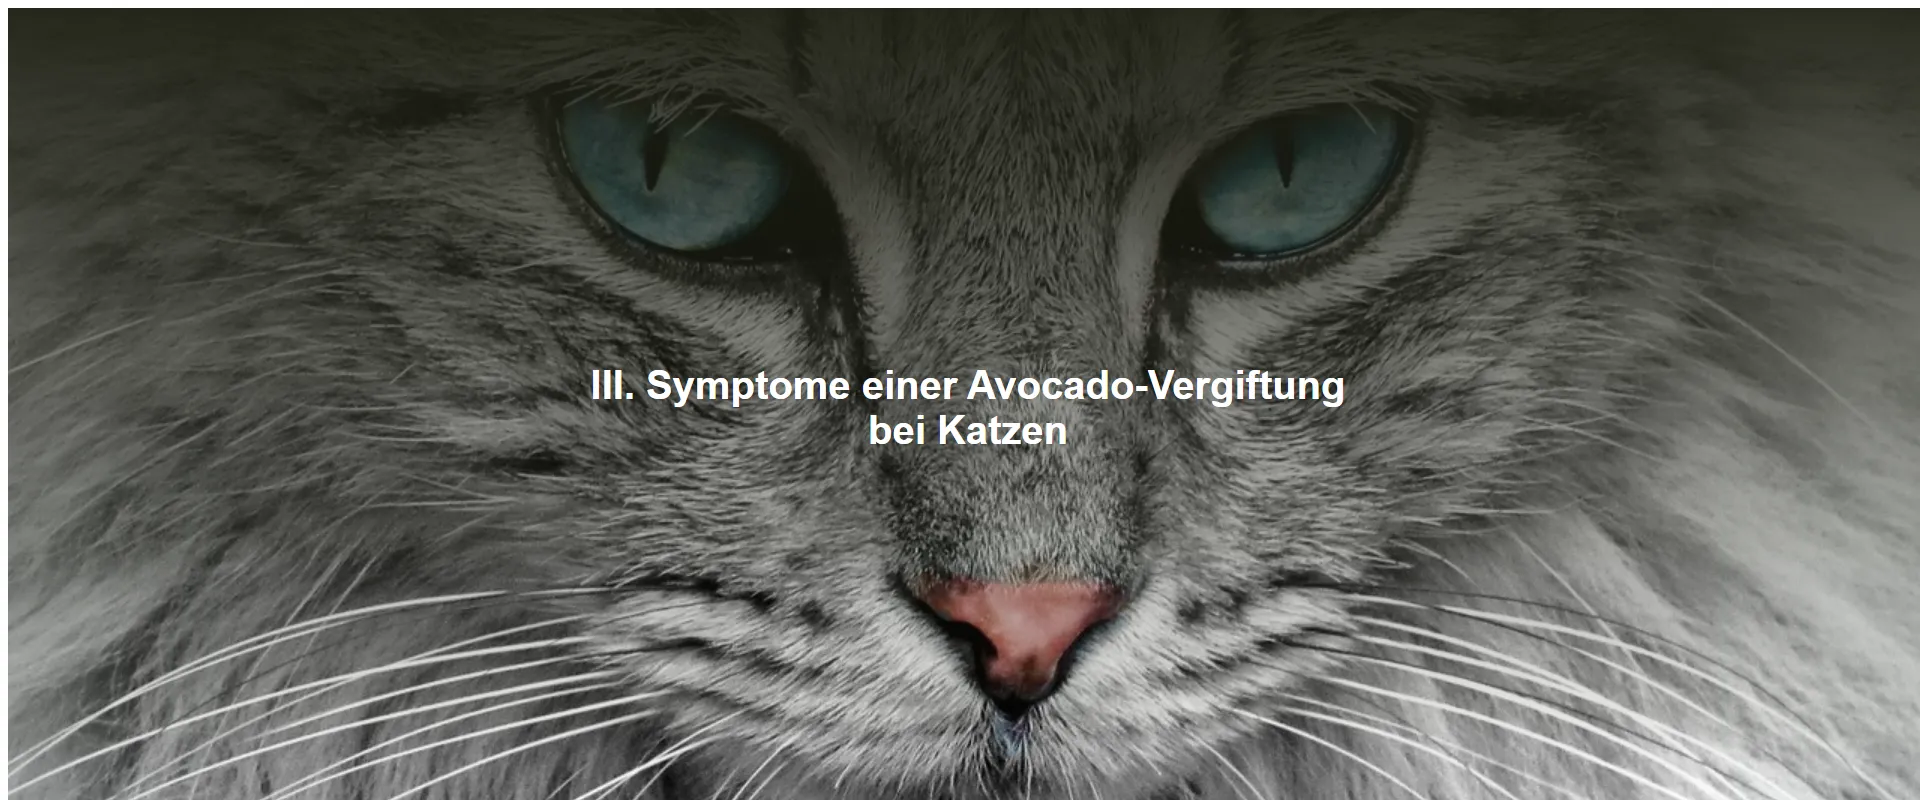 Symptome einer Avocado-Vergiftung bei Katzen